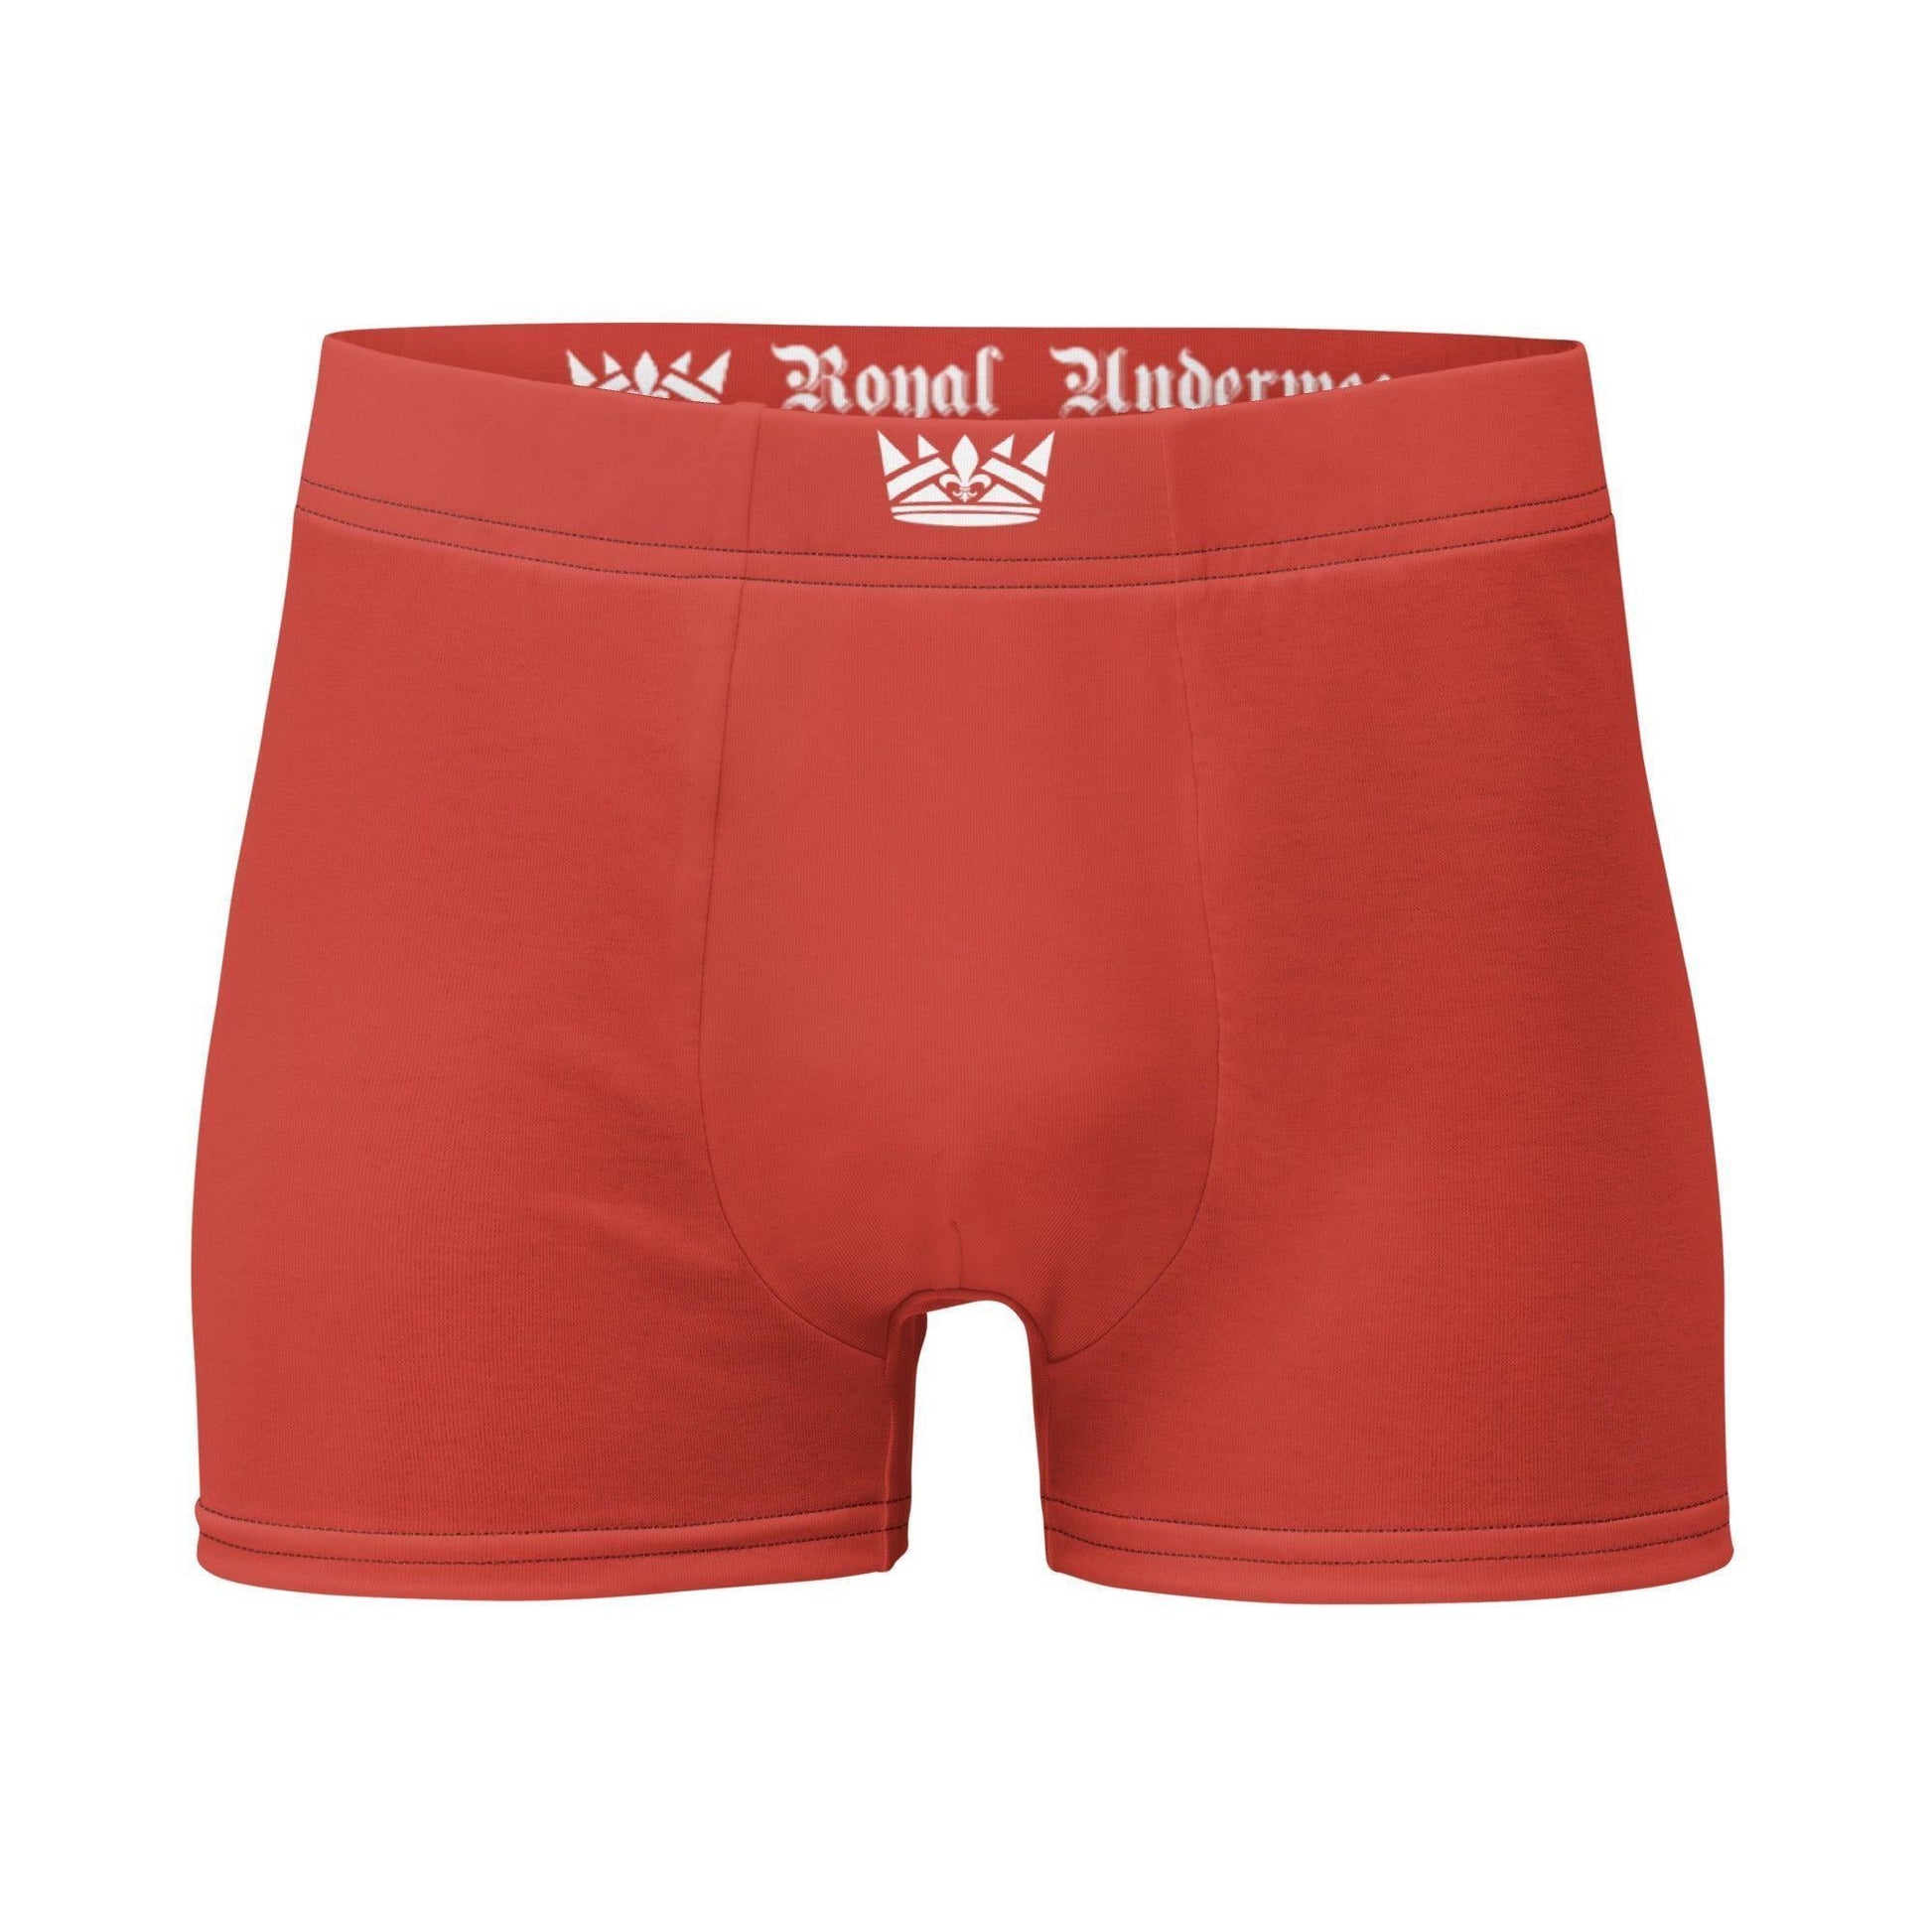 Harley Davidson Red Royal Underwear Boxershorts -- Harley Davidson Red Royal Underwear Boxershorts - undefined Boxershorts | JLR Design